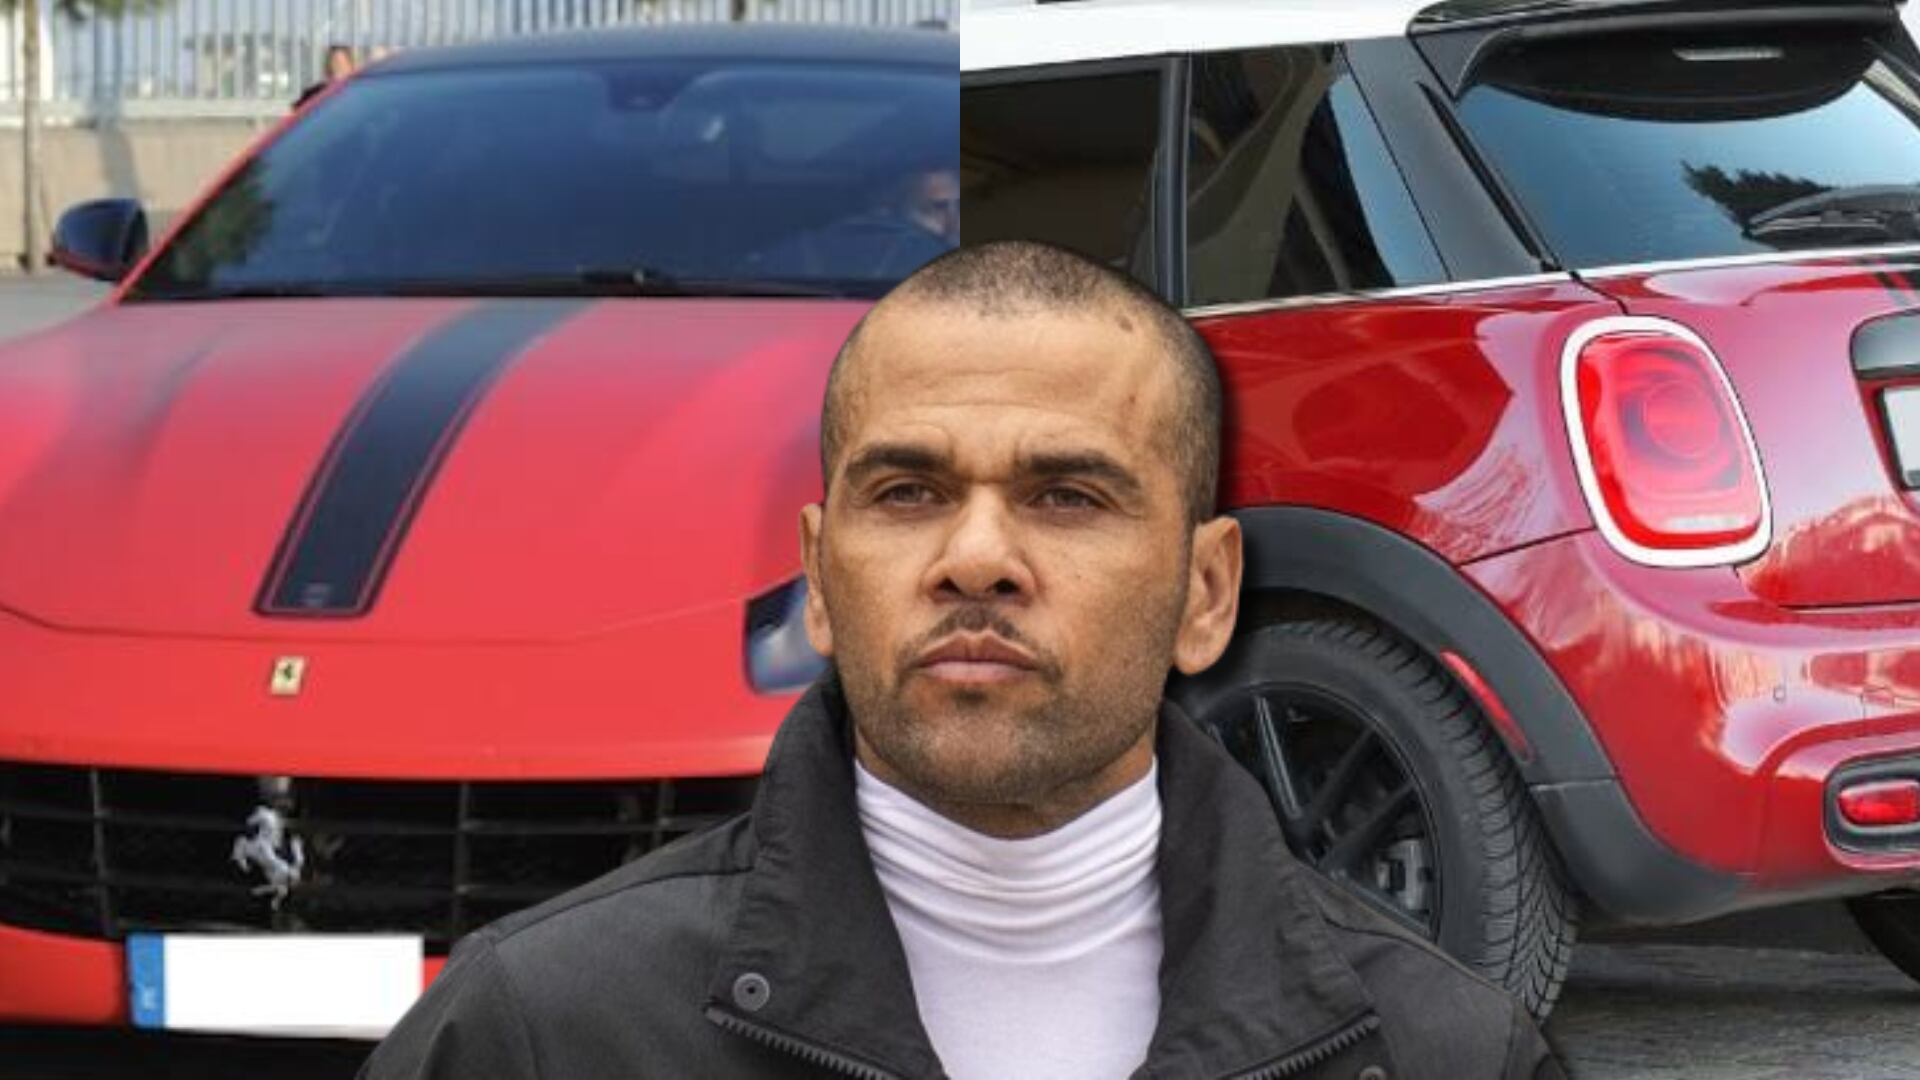 De conducir uno de 300 mil, ahora Alves salió de prisión y tiene un coche de 37 mil